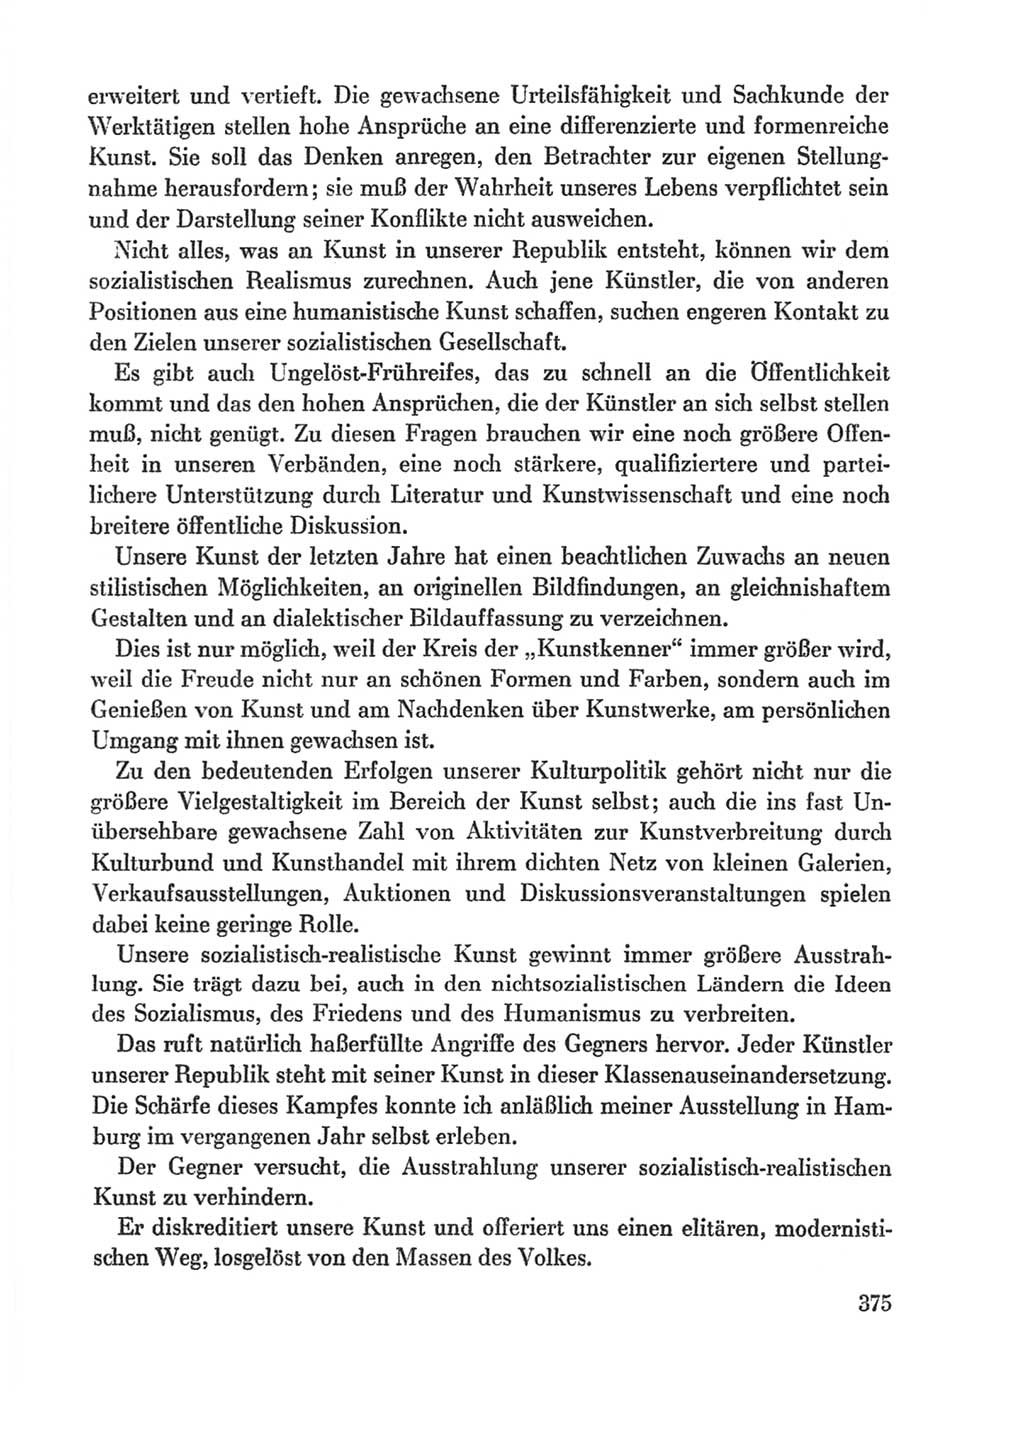 Protokoll der Verhandlungen des Ⅸ. Parteitages der Sozialistischen Einheitspartei Deutschlands (SED) [Deutsche Demokratische Republik (DDR)] 1976, Band 1, Seite 375 (Prot. Verh. Ⅸ. PT SED DDR 1976, Bd. 1, S. 375)